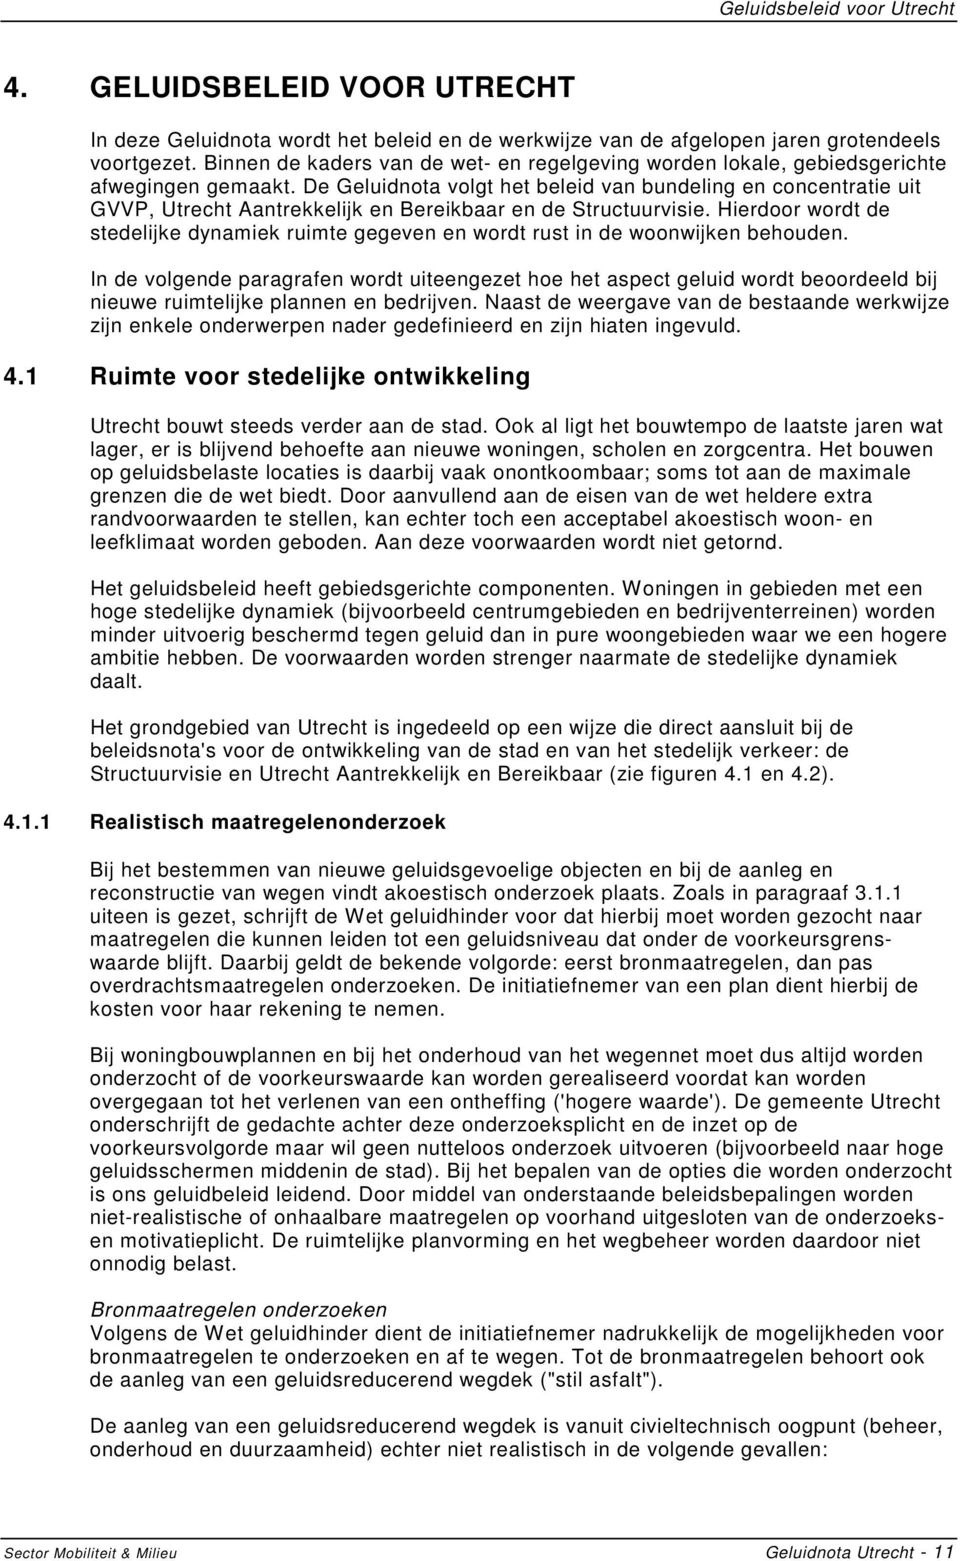 De Geluidnota volgt het beleid van bundeling en concentratie uit GVVP, Utrecht Aantrekkelijk en Bereikbaar en de Structuurvisie.